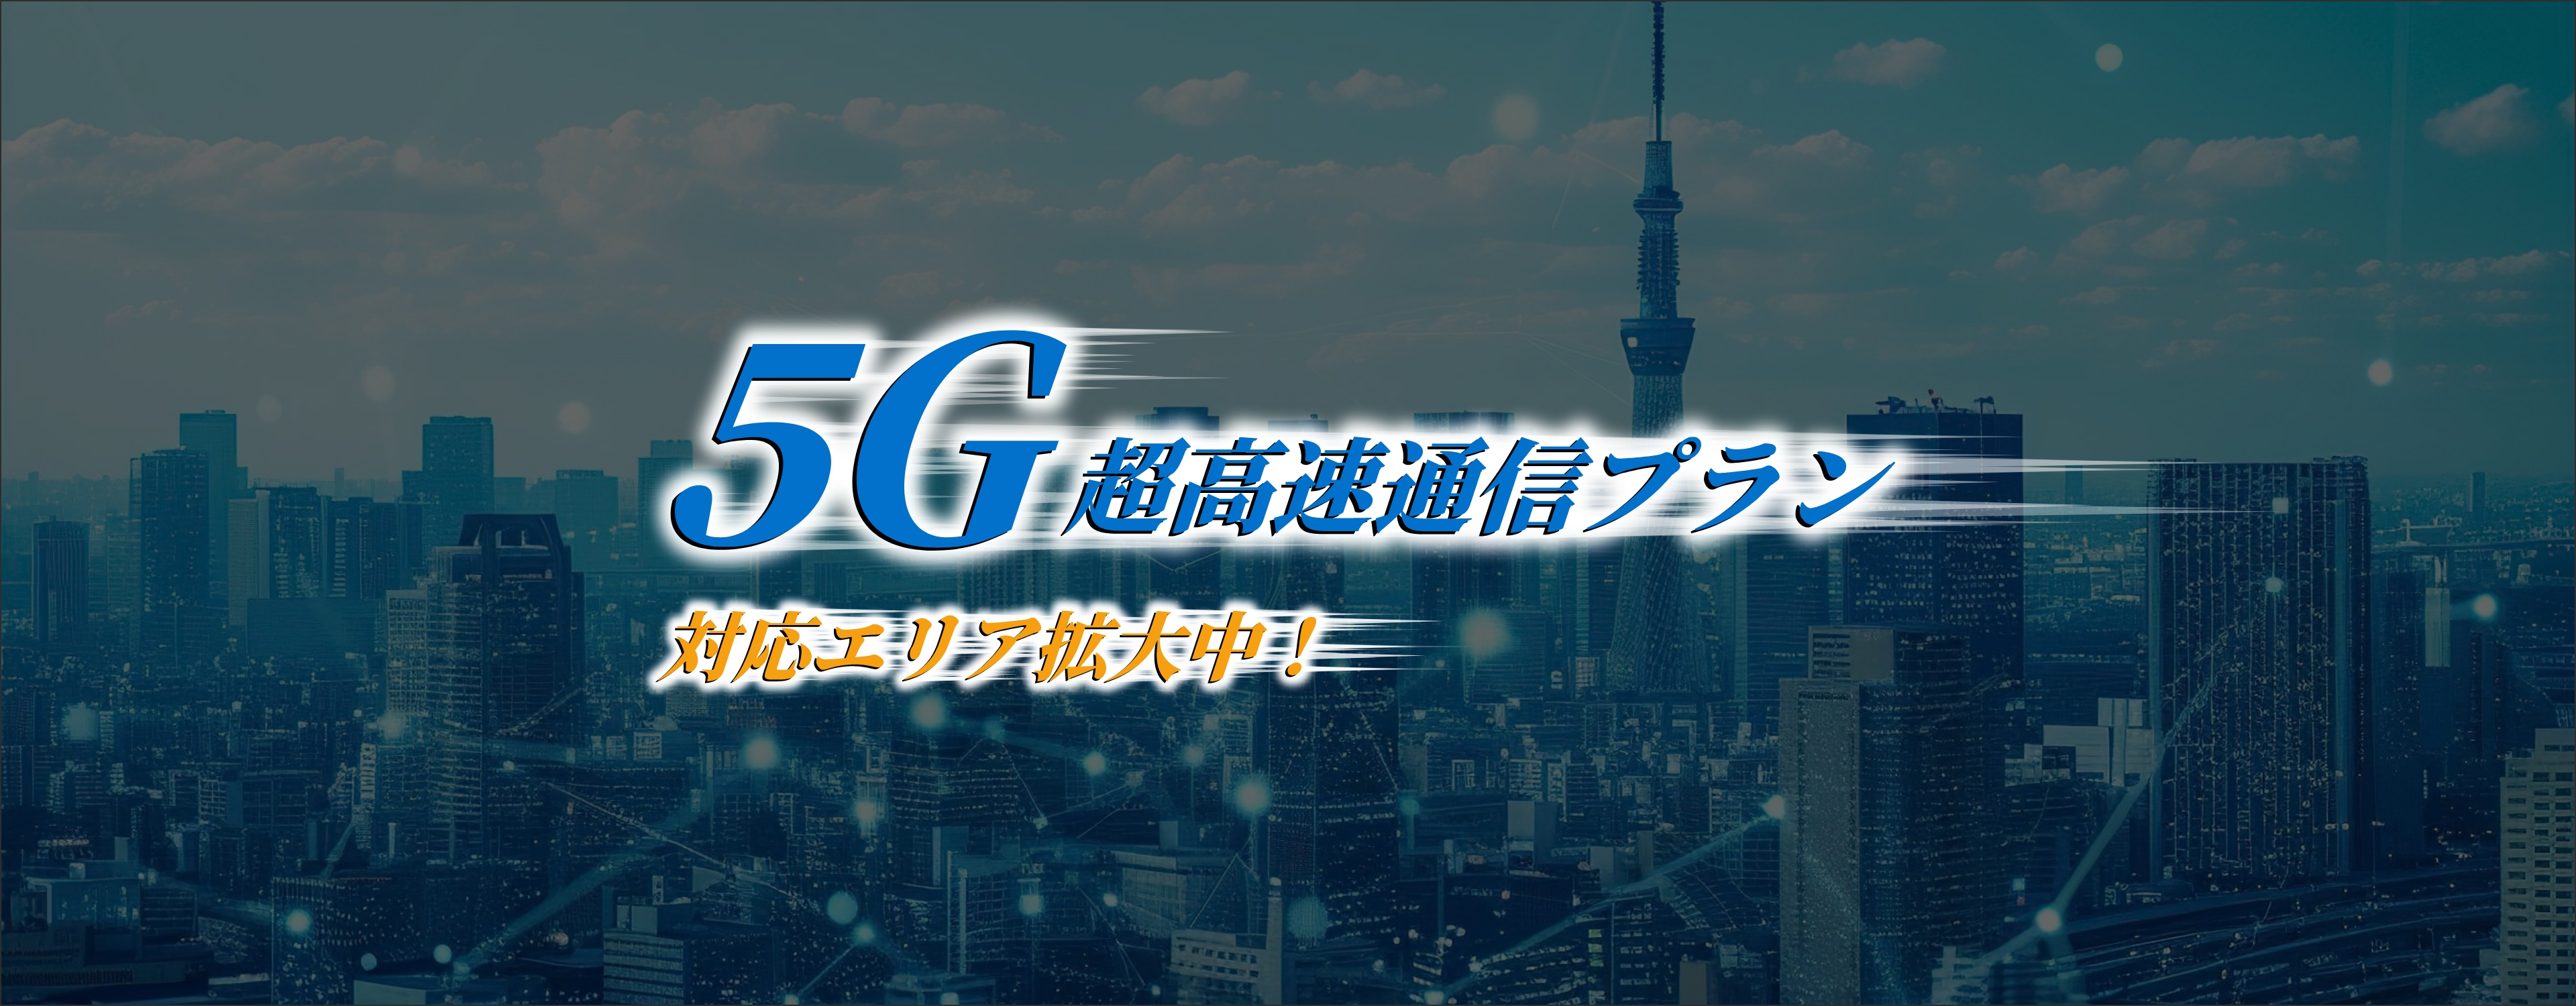 5G超高速通信プラン 対応エリア拡大中！